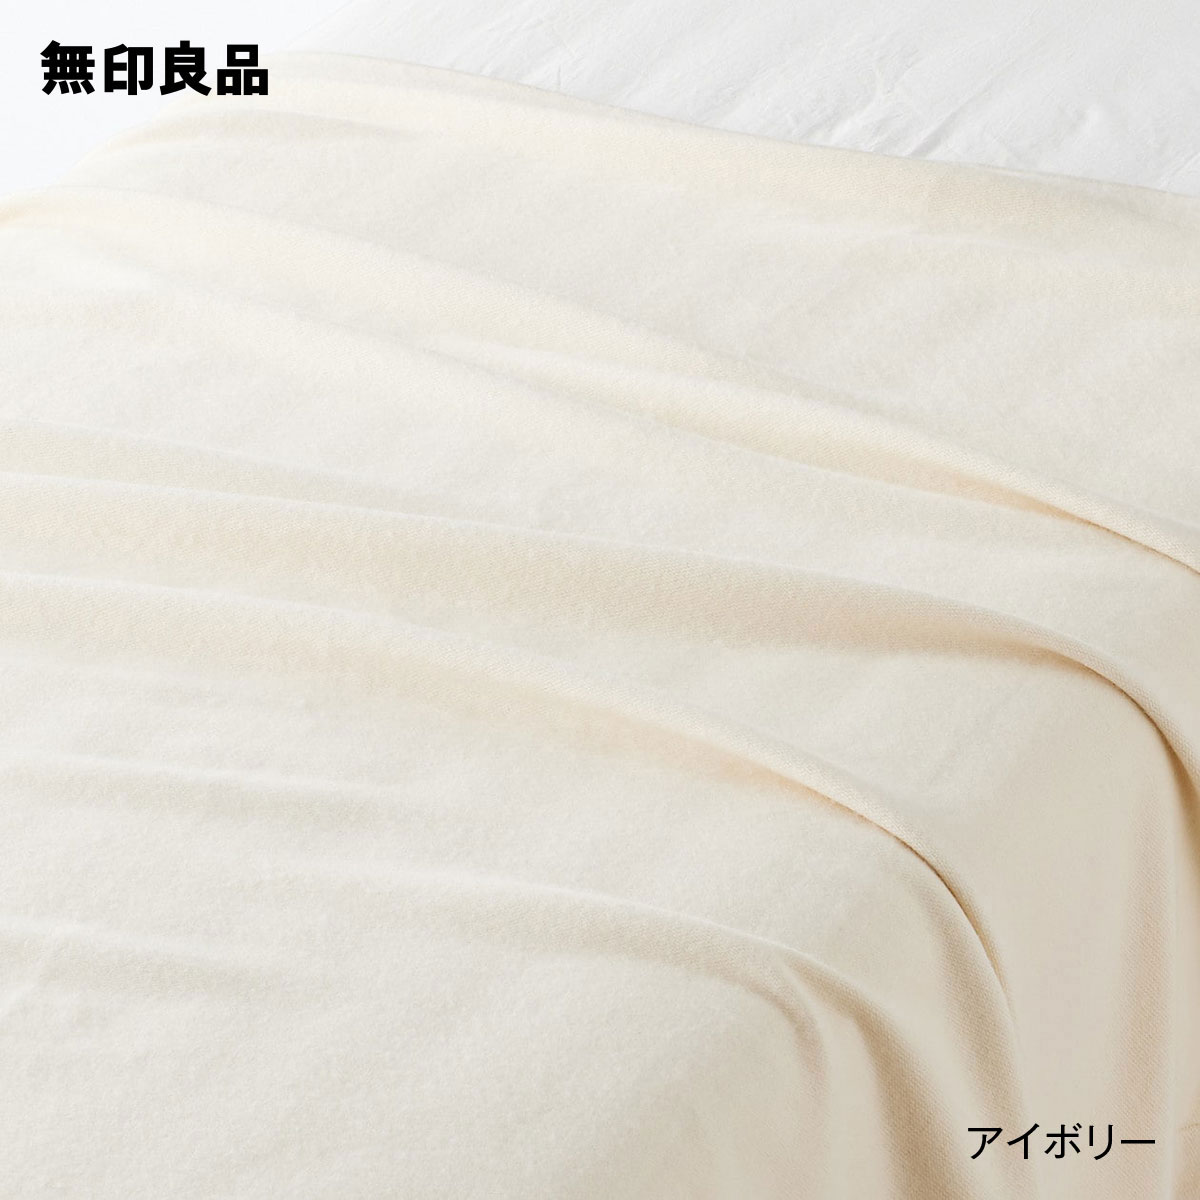 【無印良品 公式】【ダブル 】カシミヤ混毛布・180×200cm